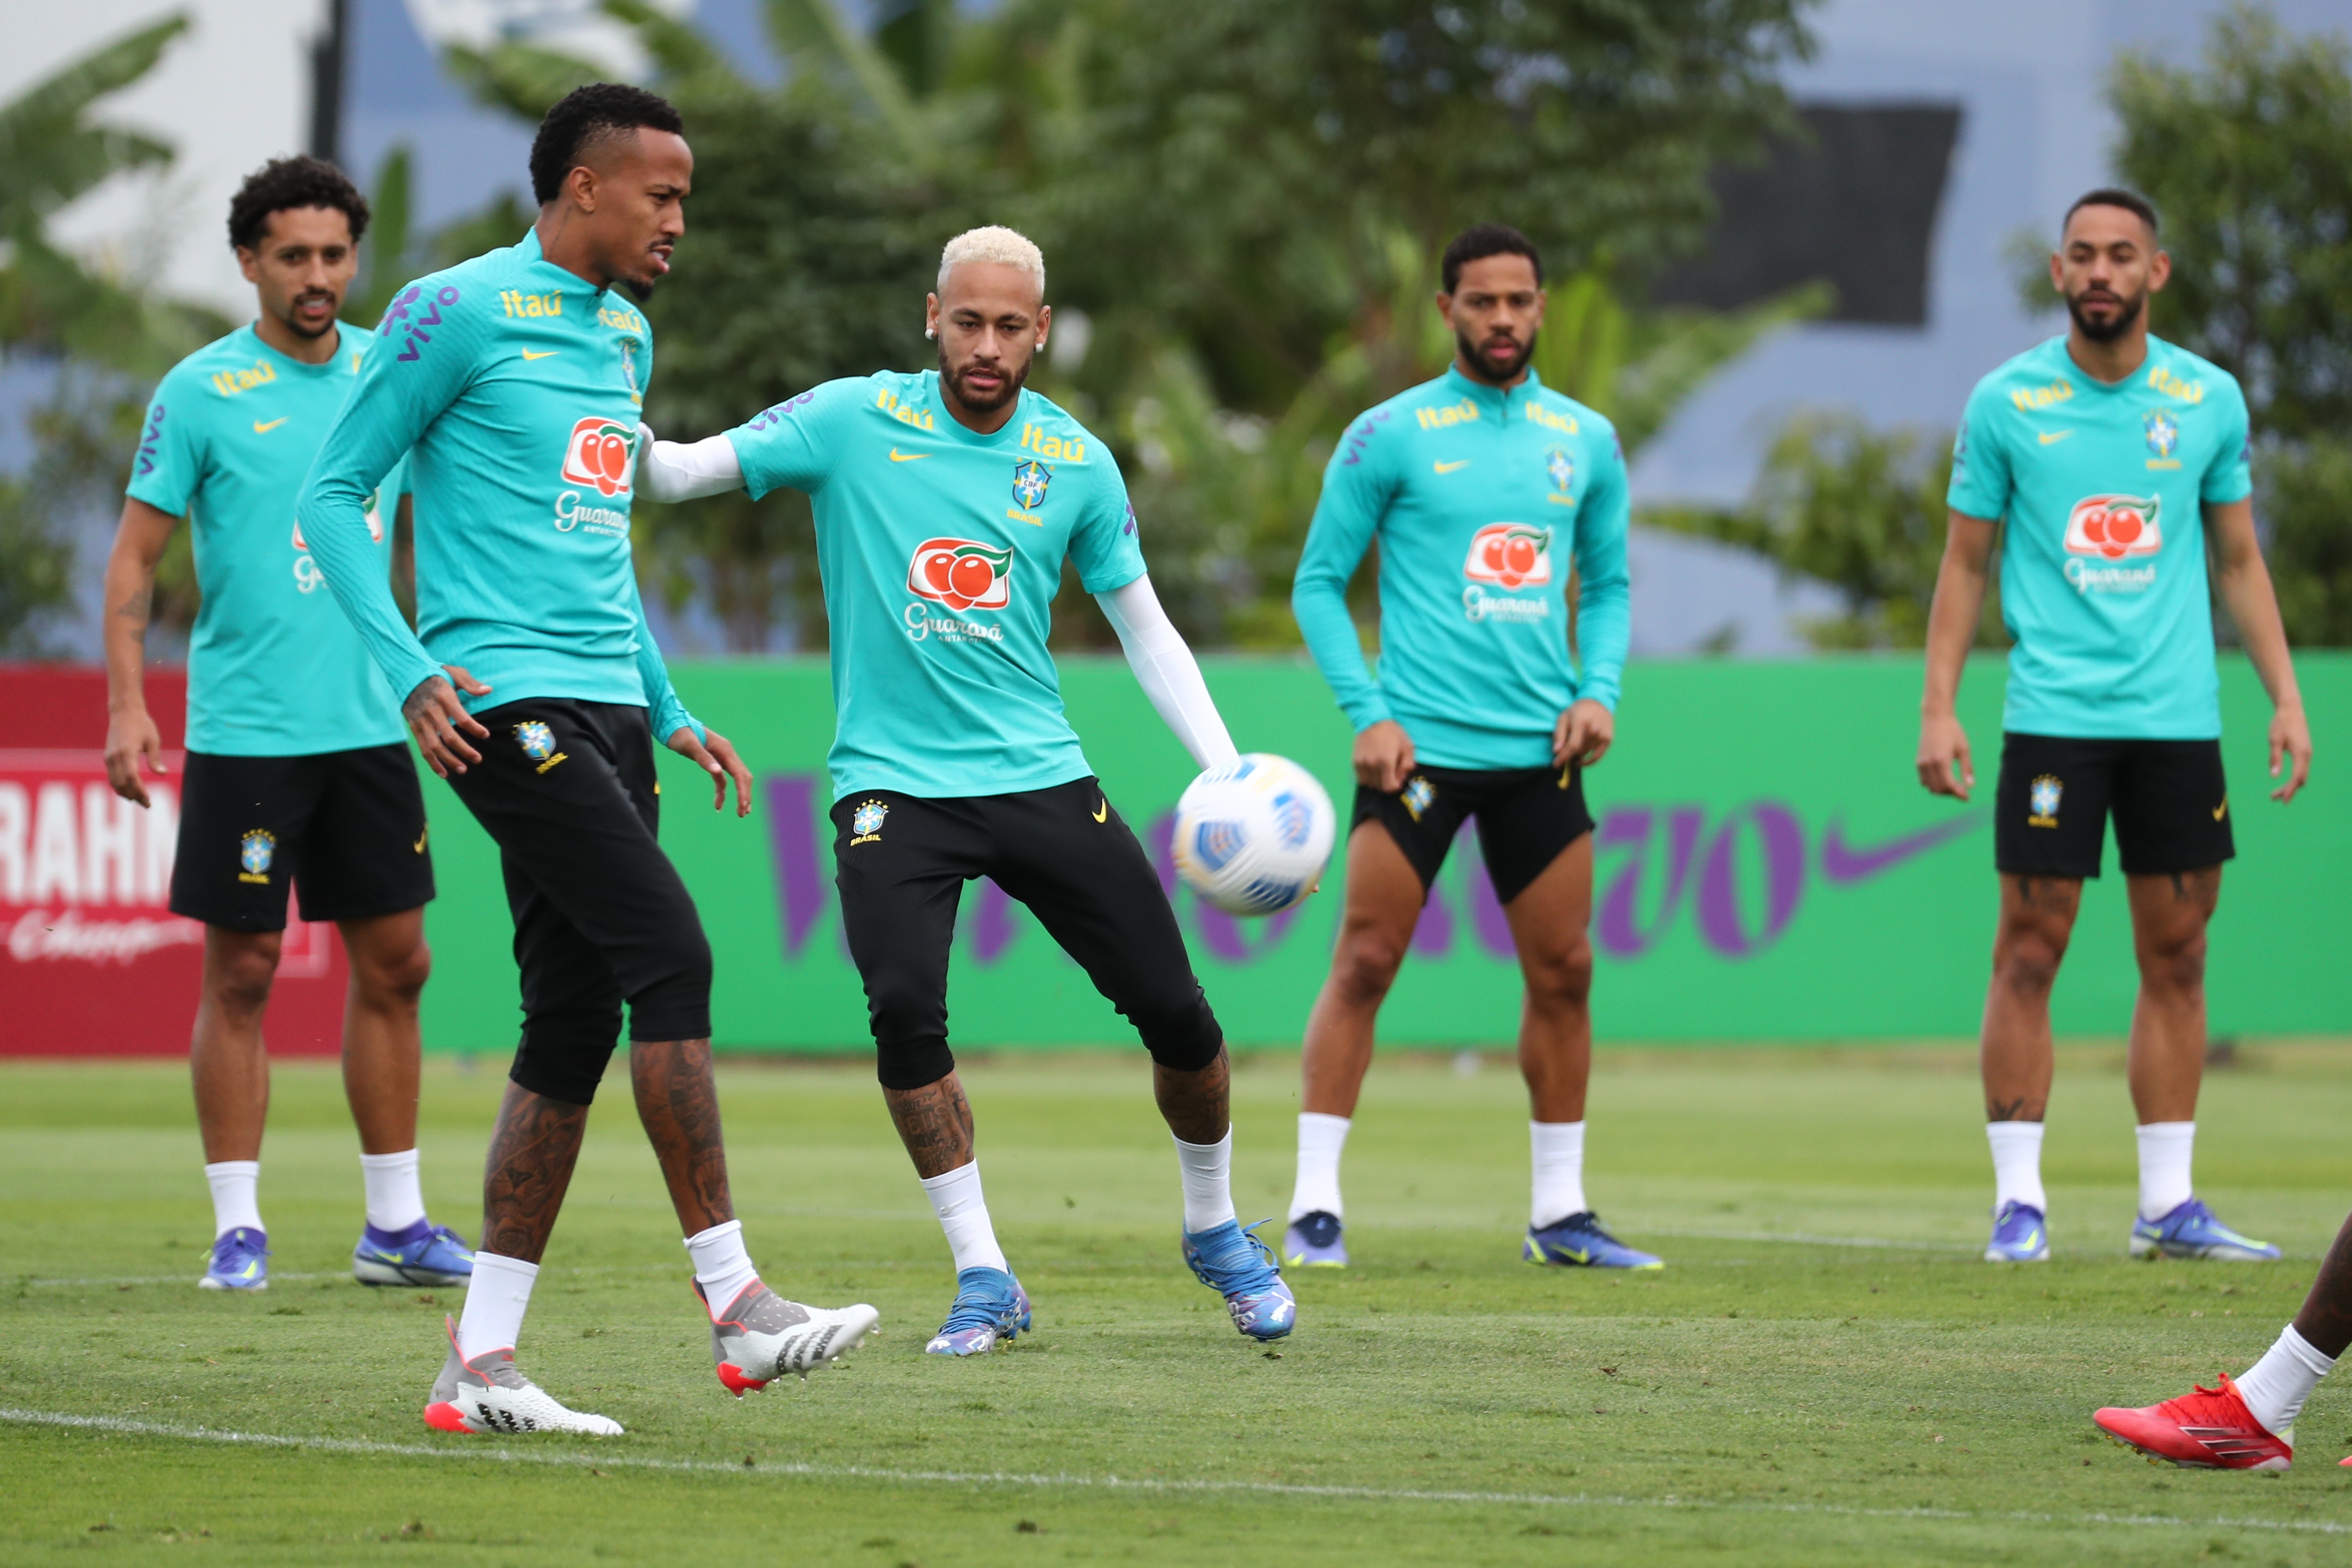 Los jugadores de la selección brasileña de futbol Eder Militao (2-i) y Neymar participan en un entrenamiento hoy. (Foto Prensa Libre: EFE)